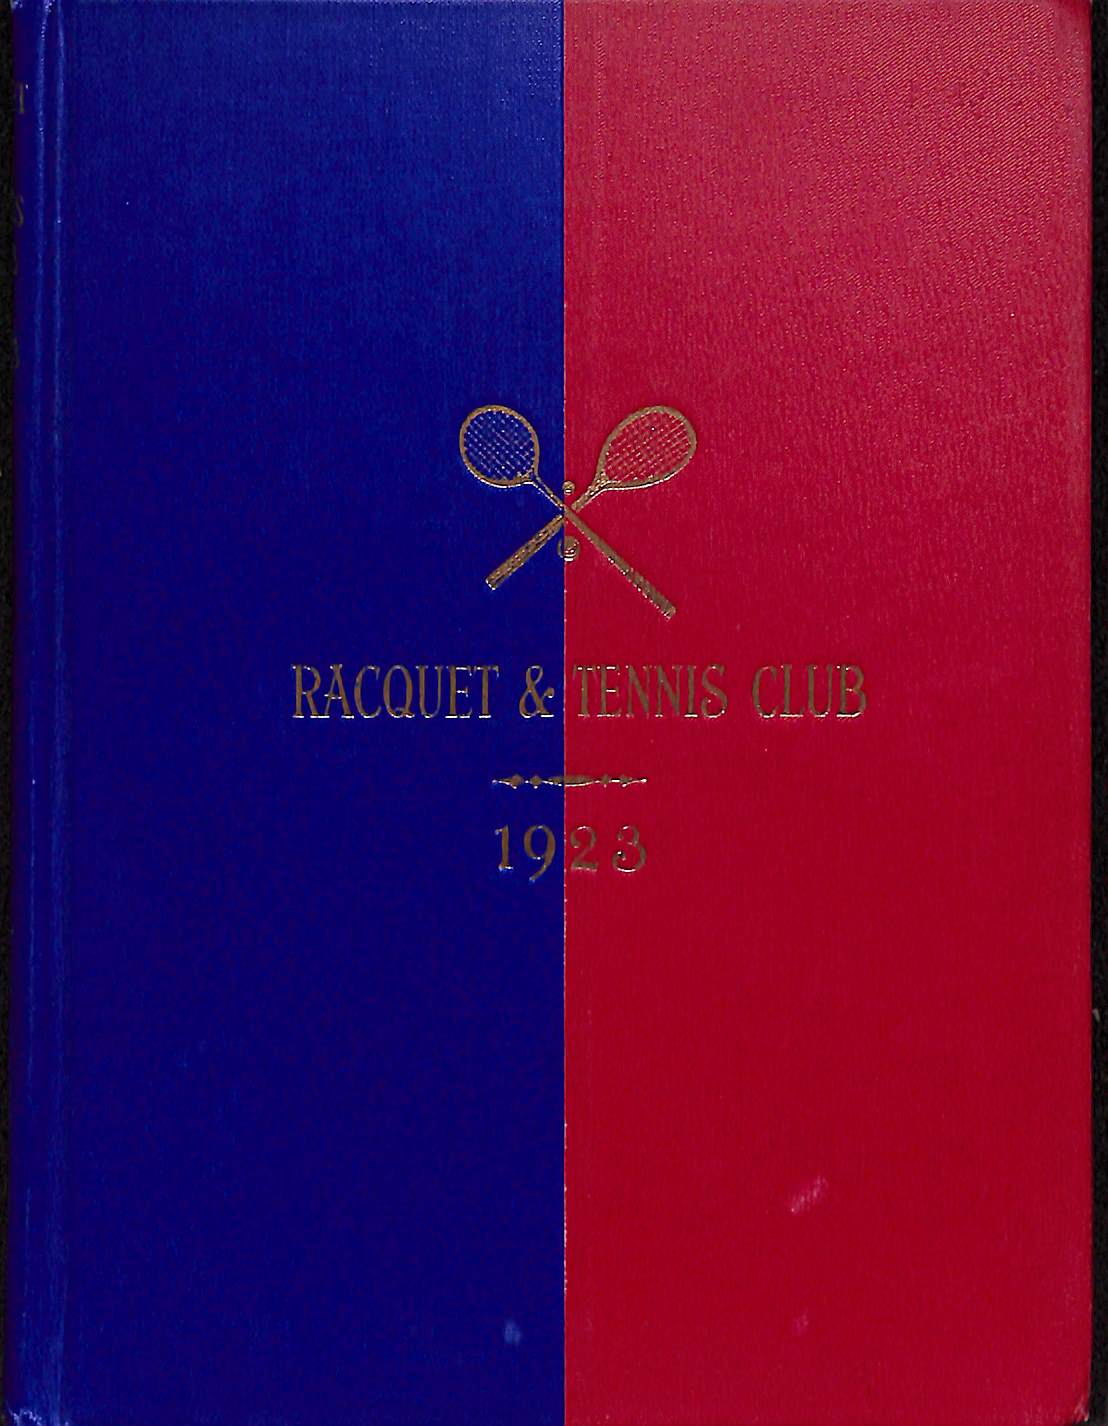 "Racquet & Tennis Club" 1923